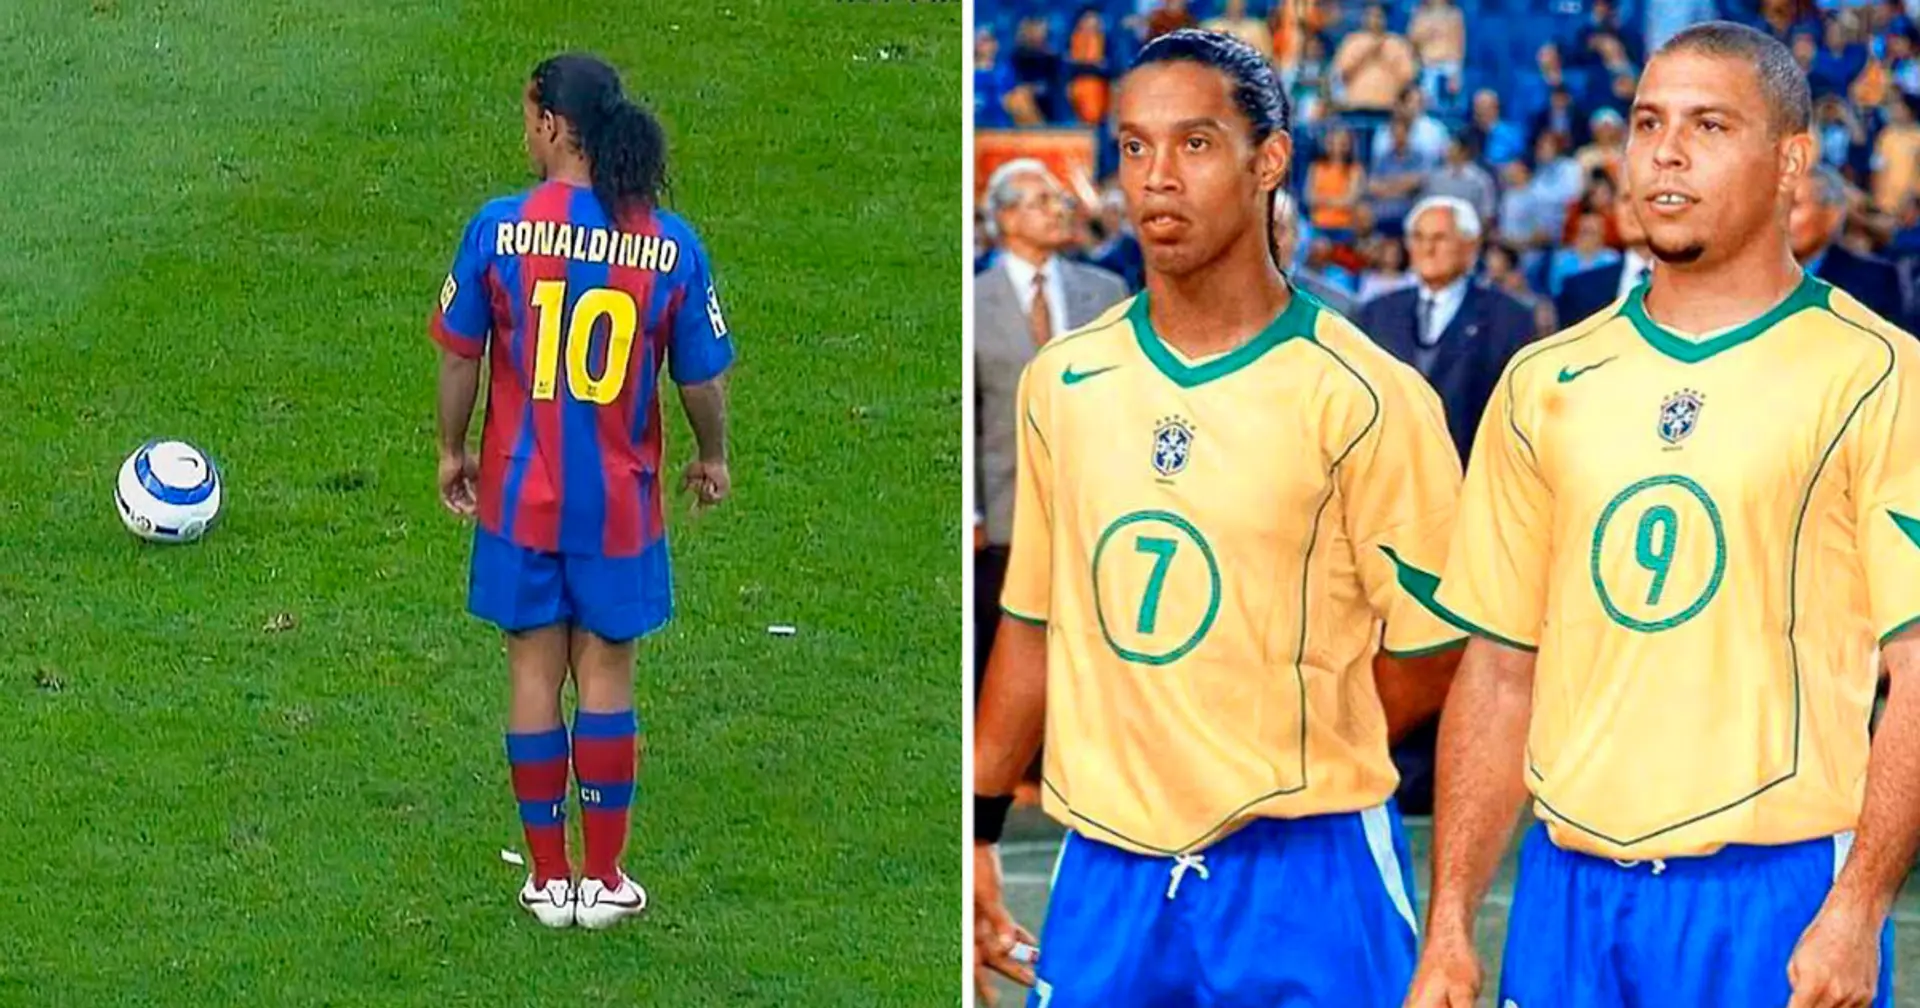 "Er konnte alles auf dem Platz": Der schwierigste Gegner in der Karriere von Ronaldinho und Ronaldo